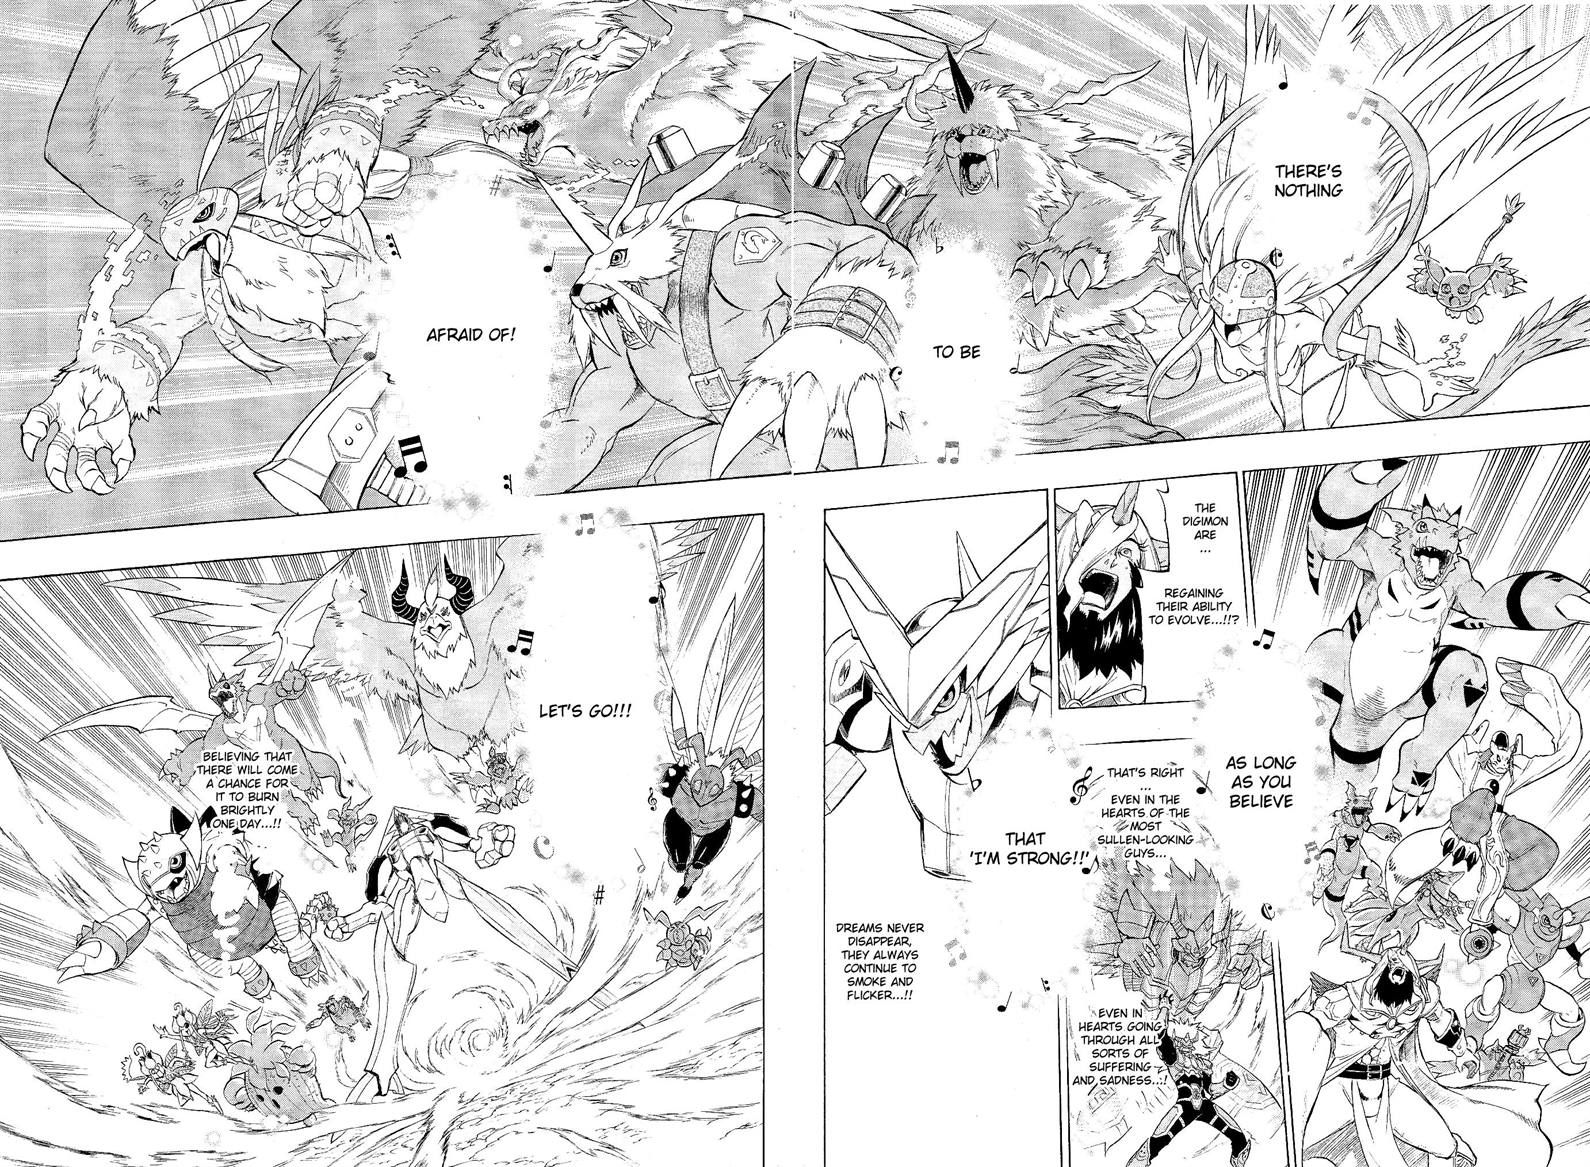 Digimon Cross Wars 21